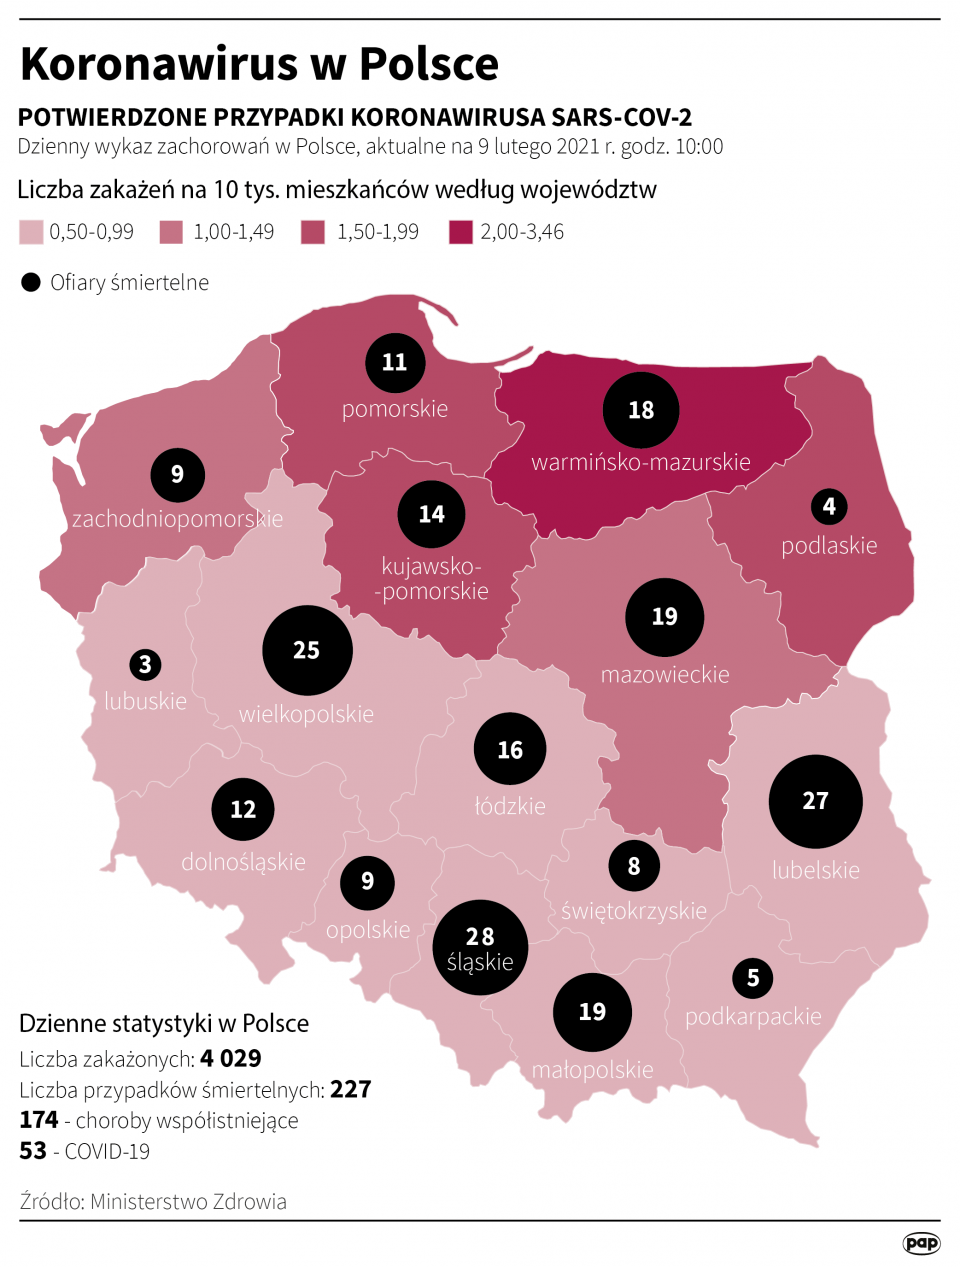 Koronawirus w Polsce stan na 9 lutego [autor: Maciej Zieliński, źródło: PAP]